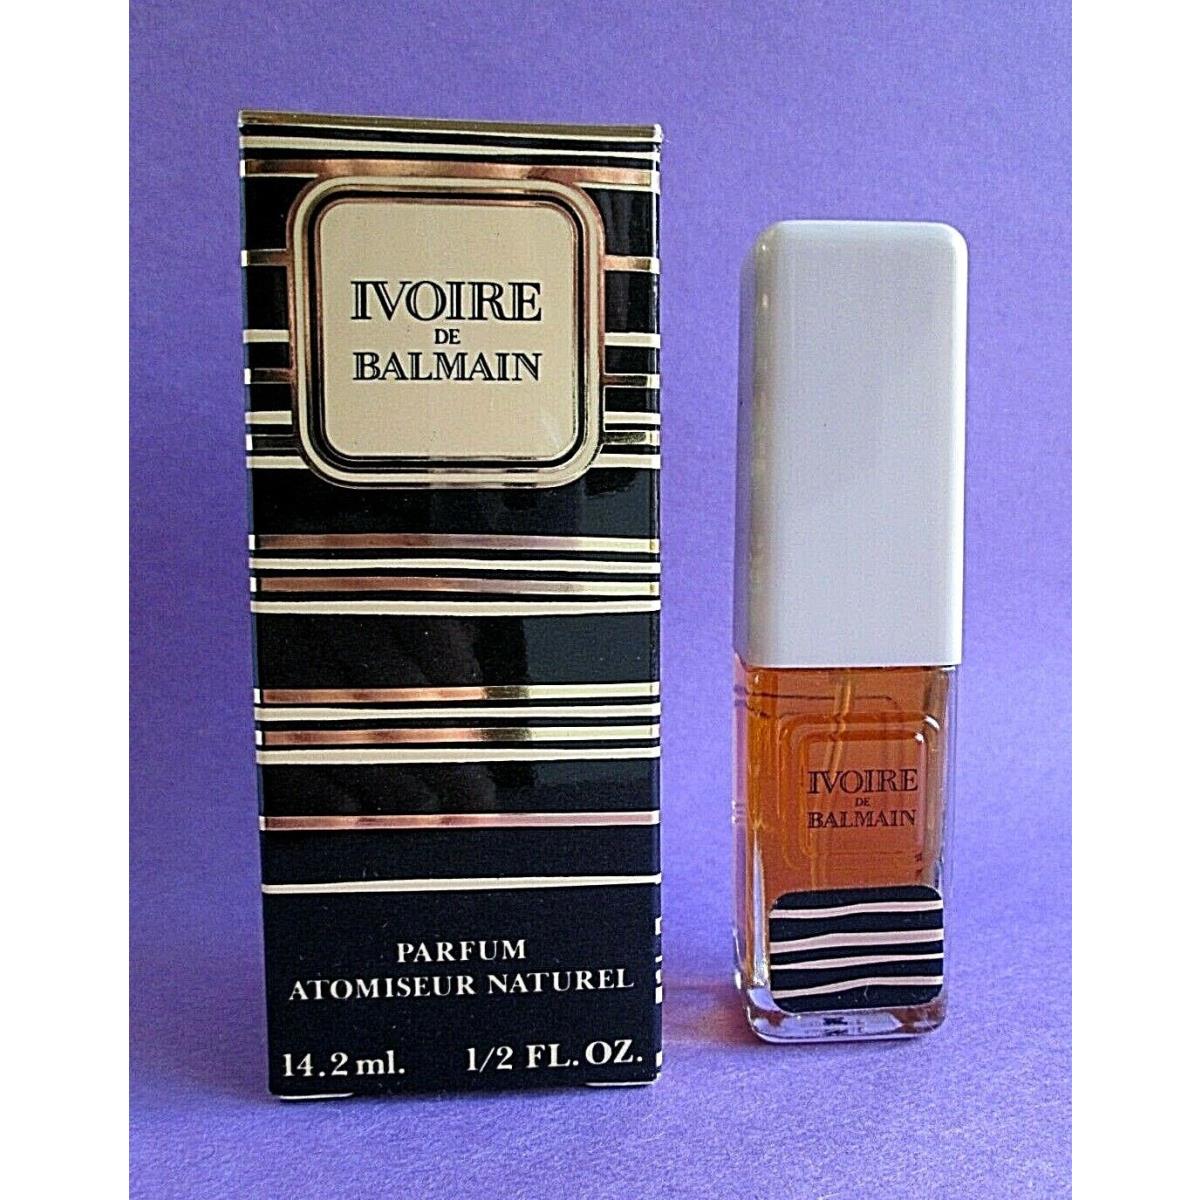 Ivoire de Balmain Atomiseur Naturel Vintage Pure Perfume 1/2 oz 14.2 ml